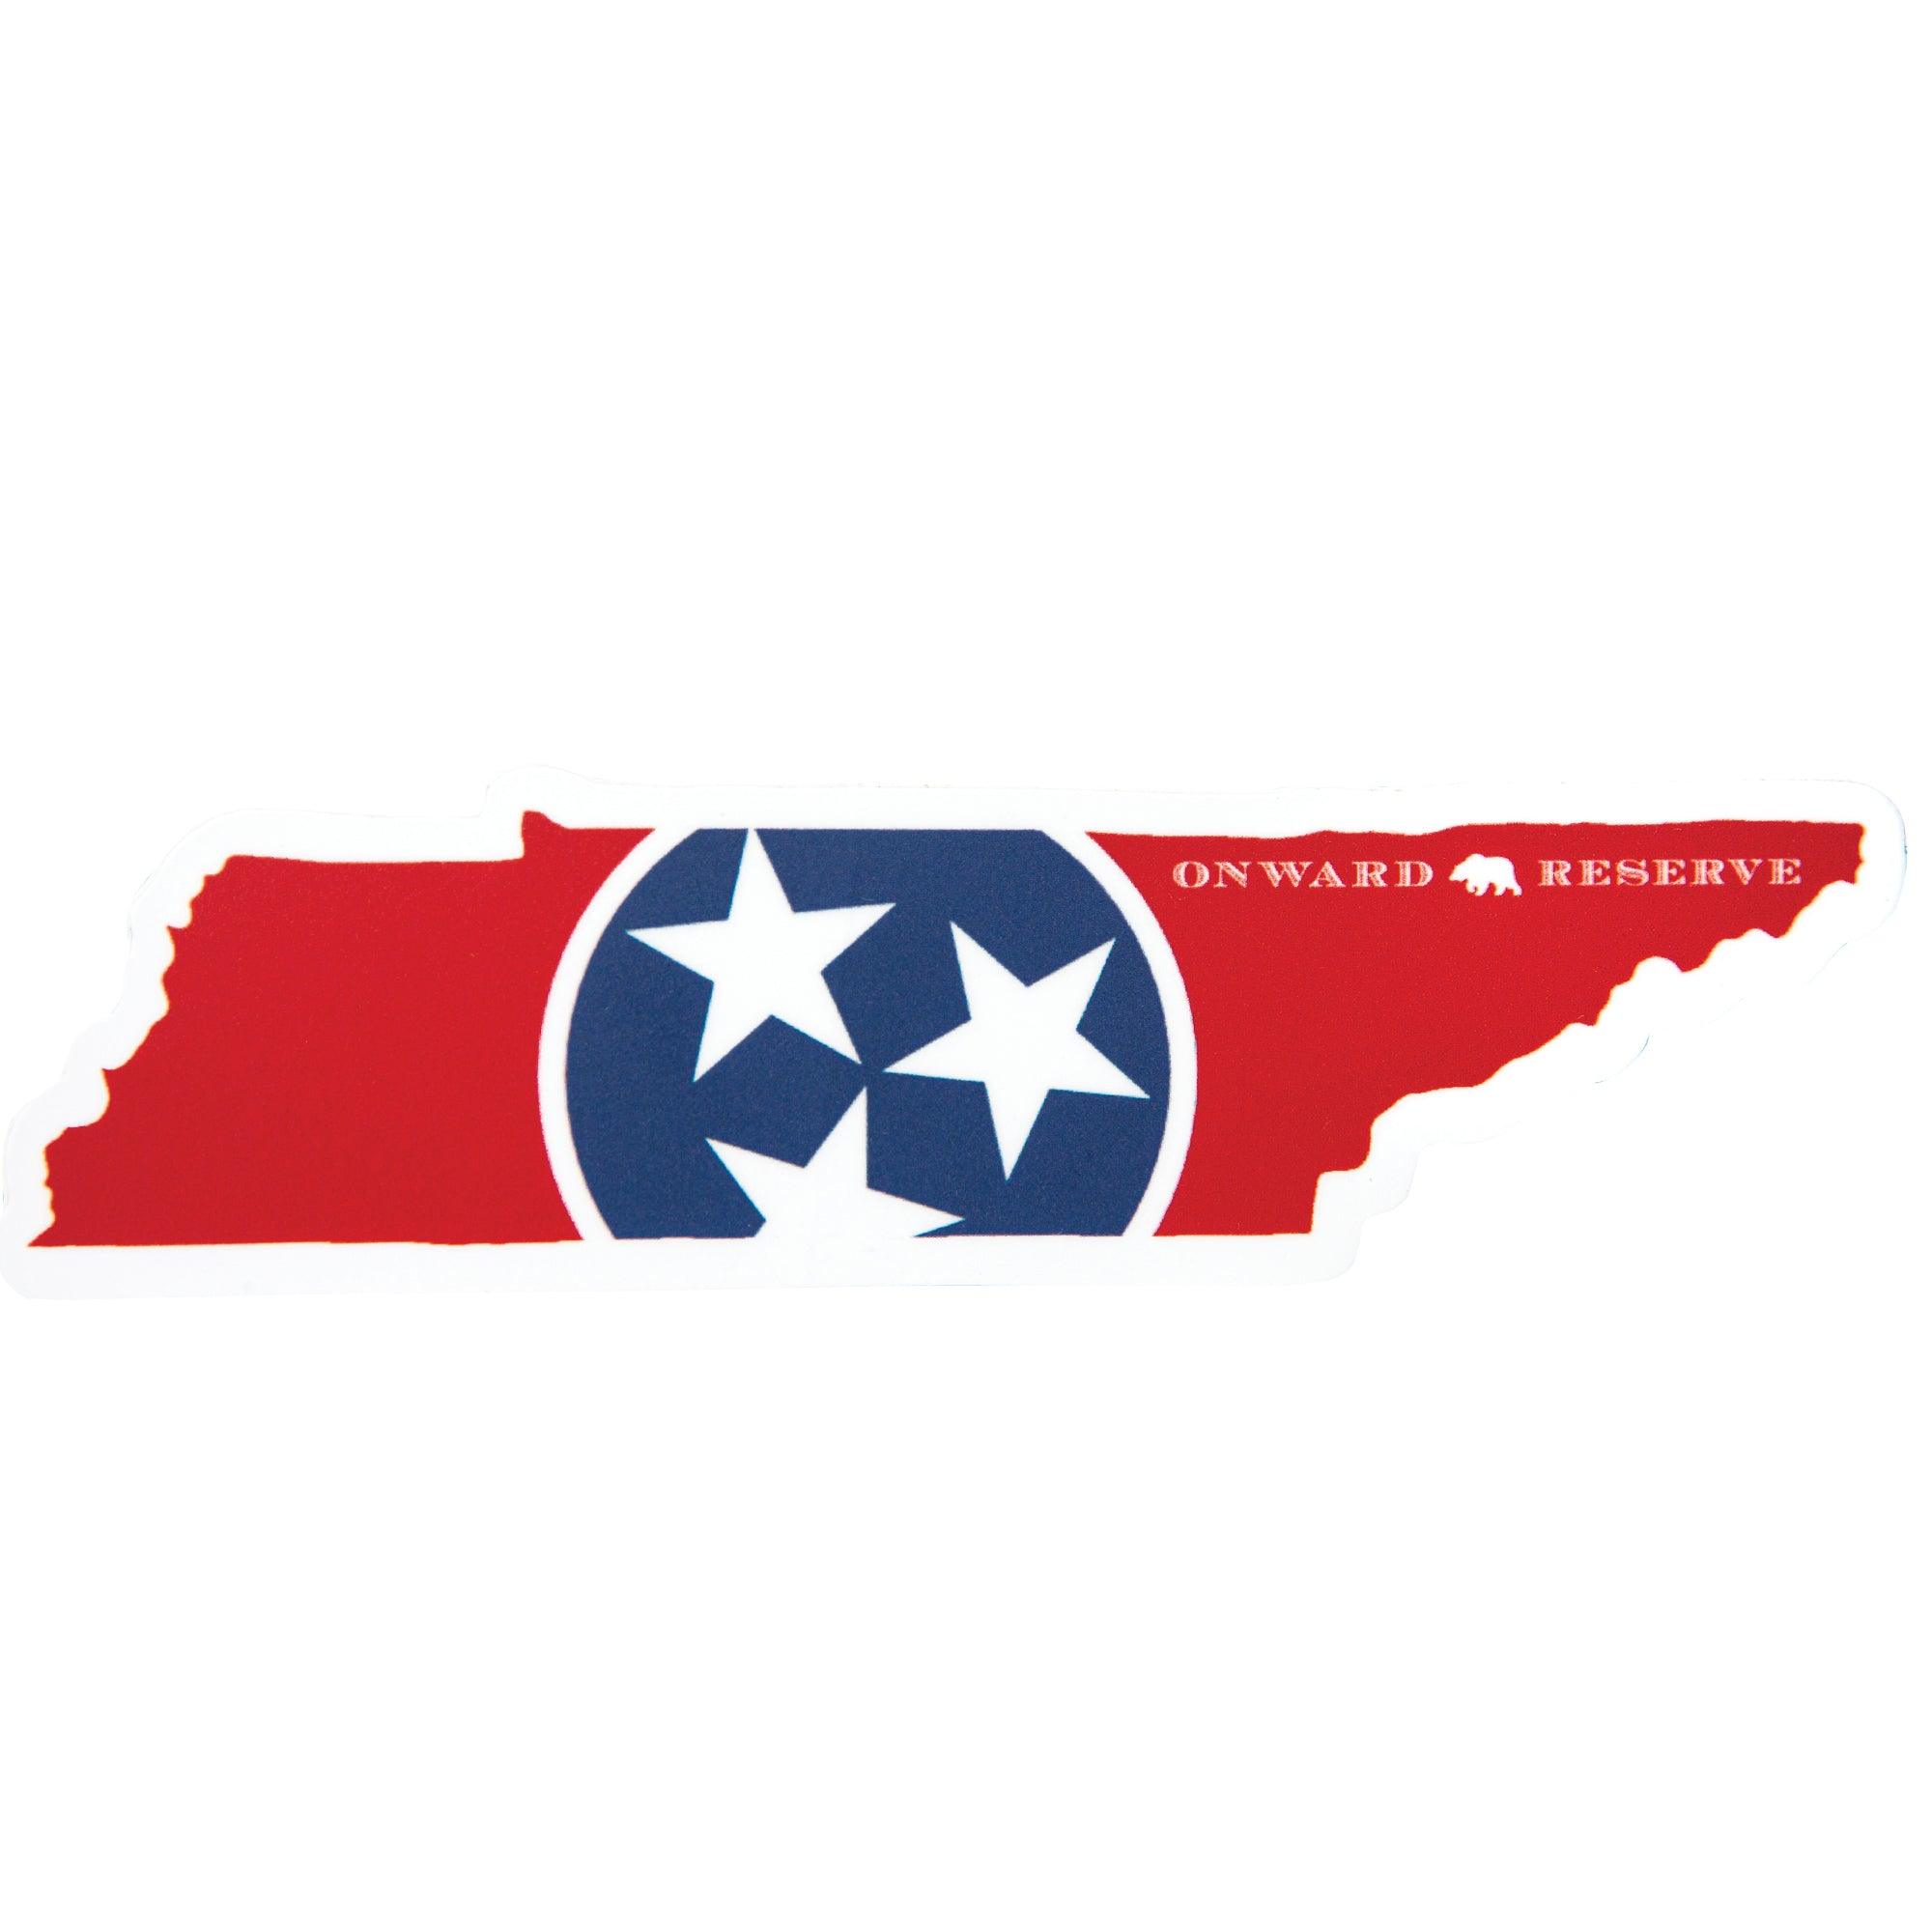 Tennessee Flag Sticker – RepYourWater